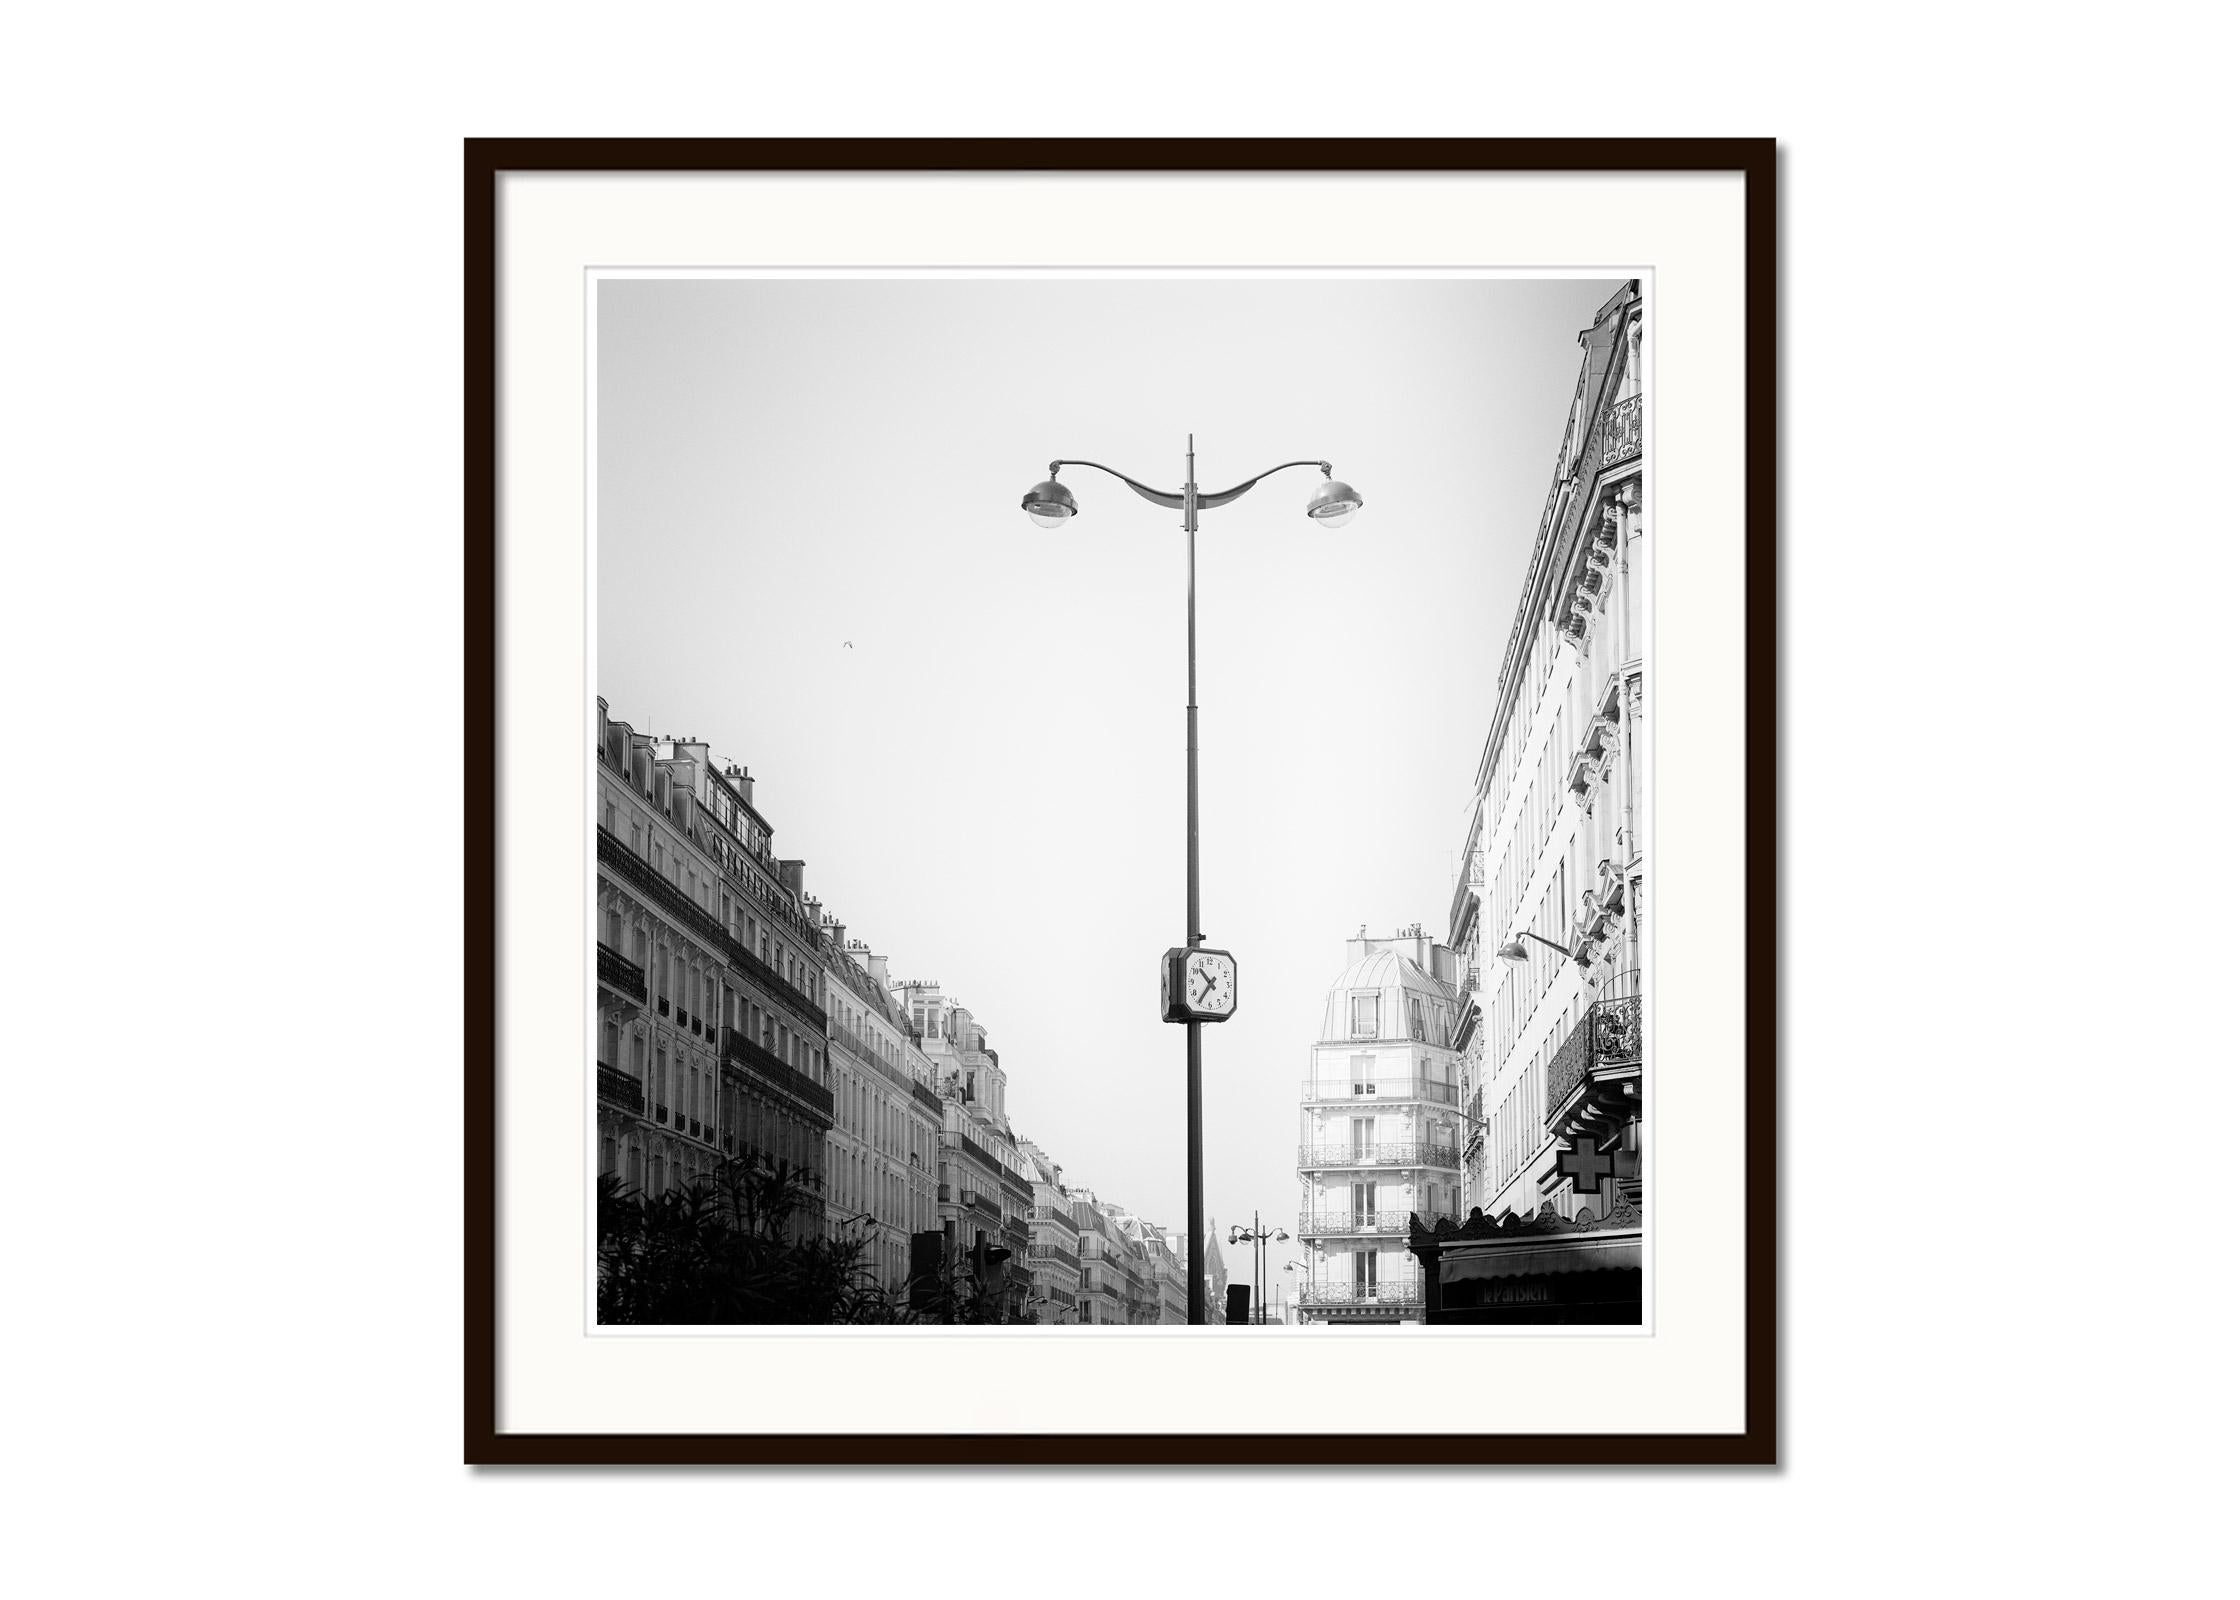 le Parisien, Paris, France, black and white cityscape fine art photography print - Gray Landscape Photograph by Gerald Berghammer